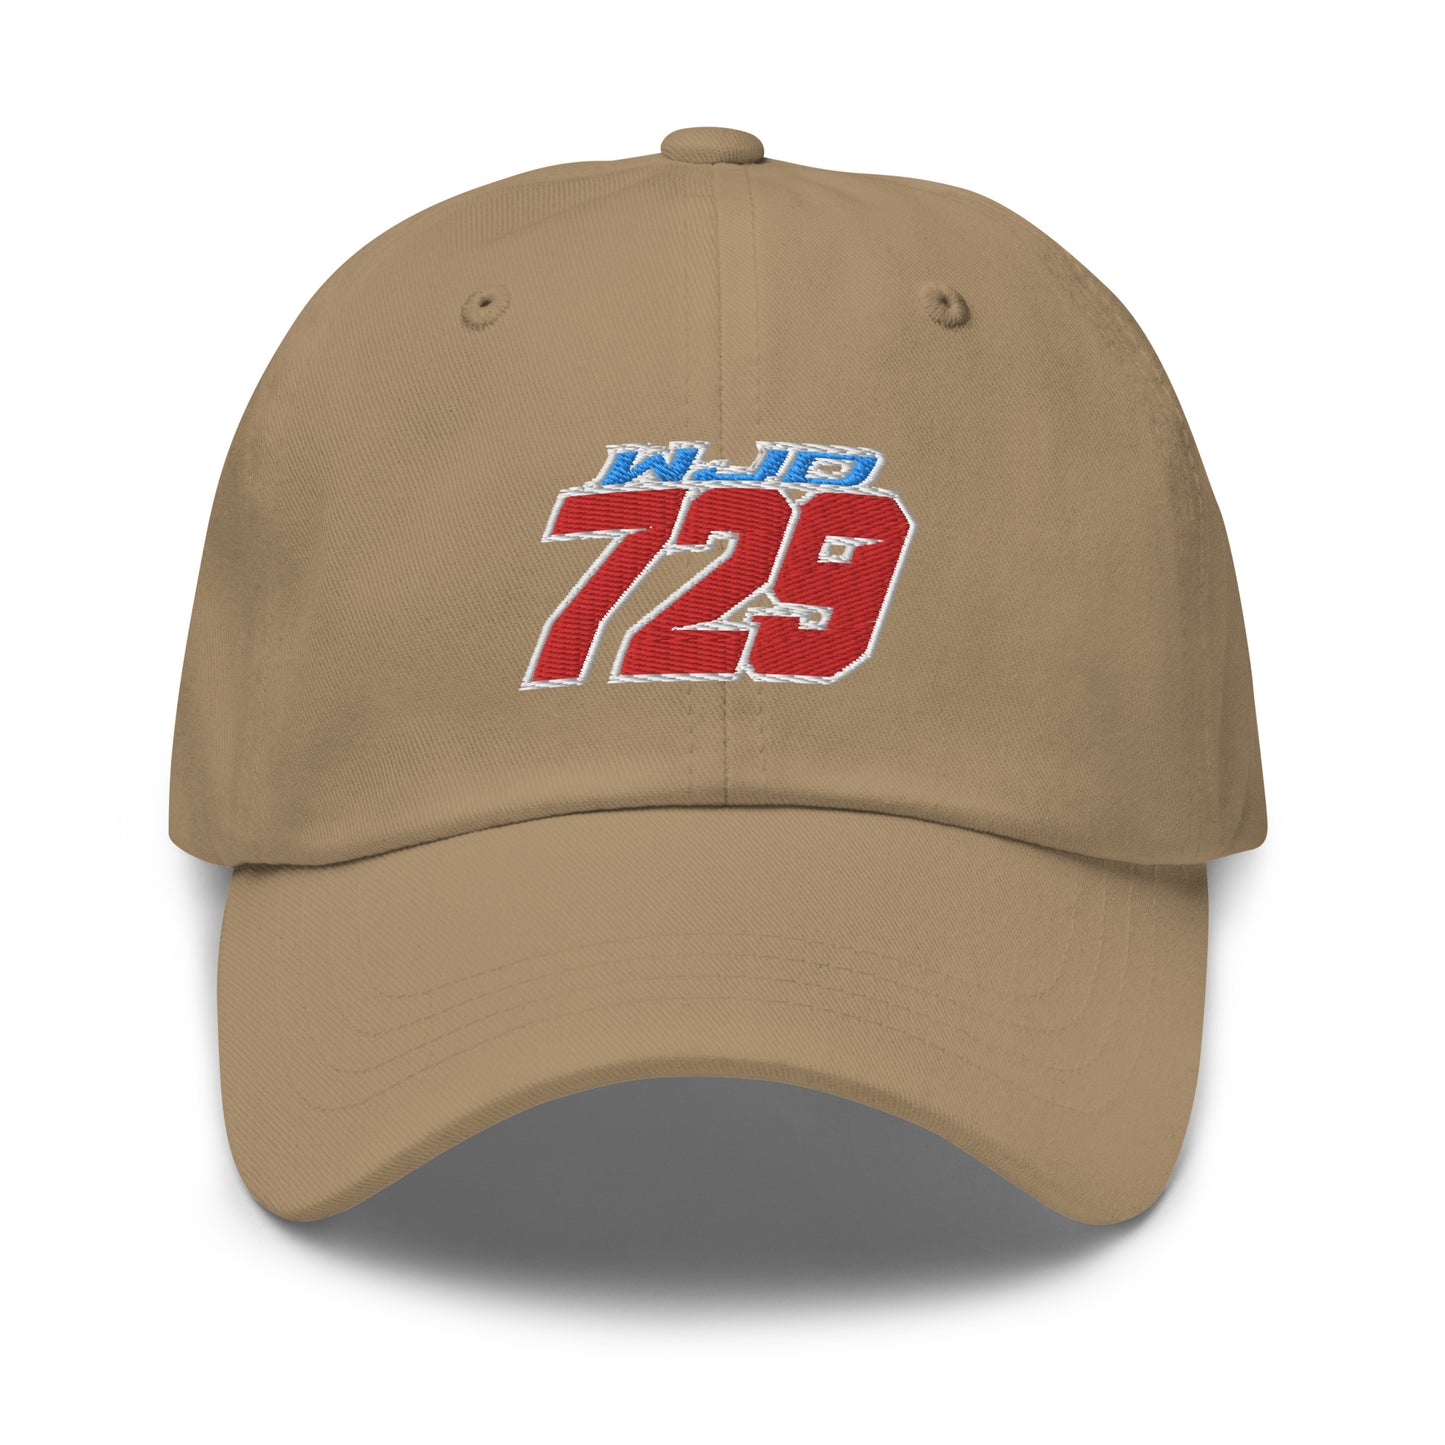 WJD 729 Dad Hat